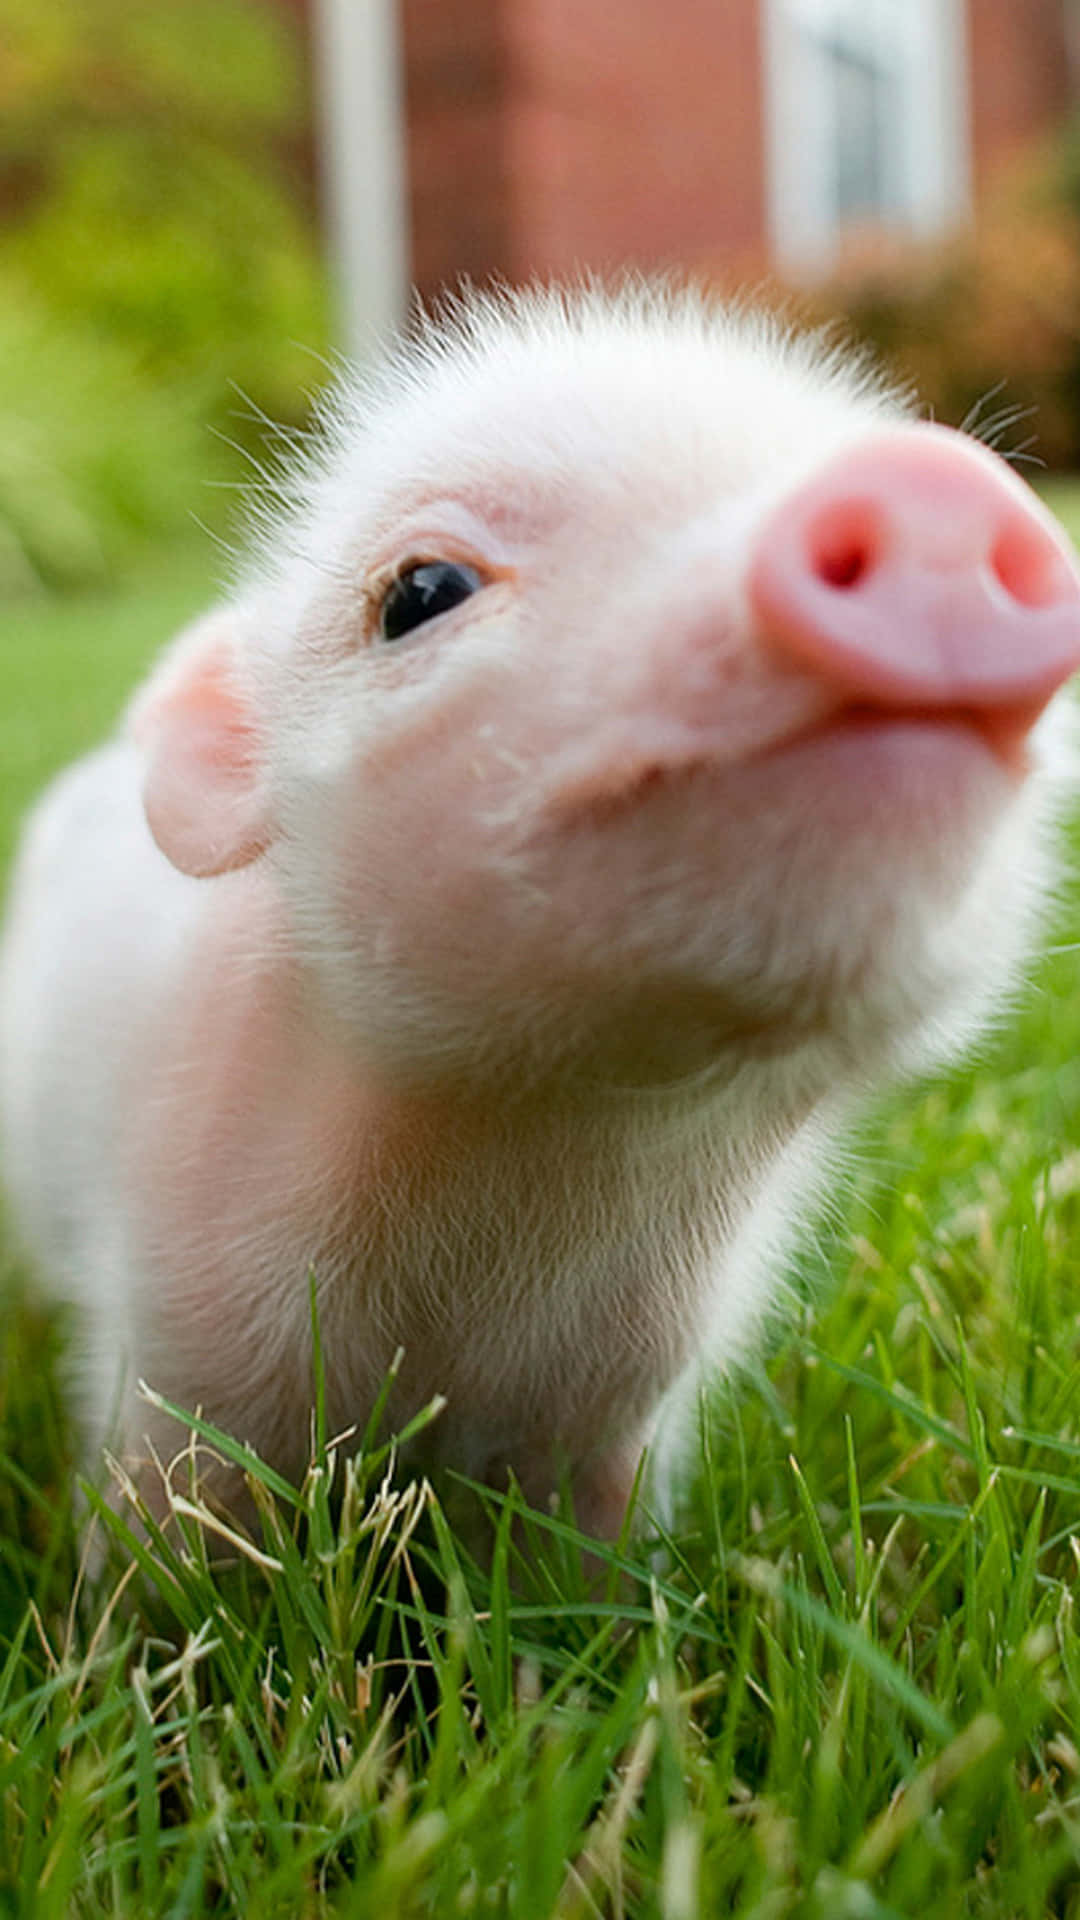 Cool Piggy In The Grass Wallpaper